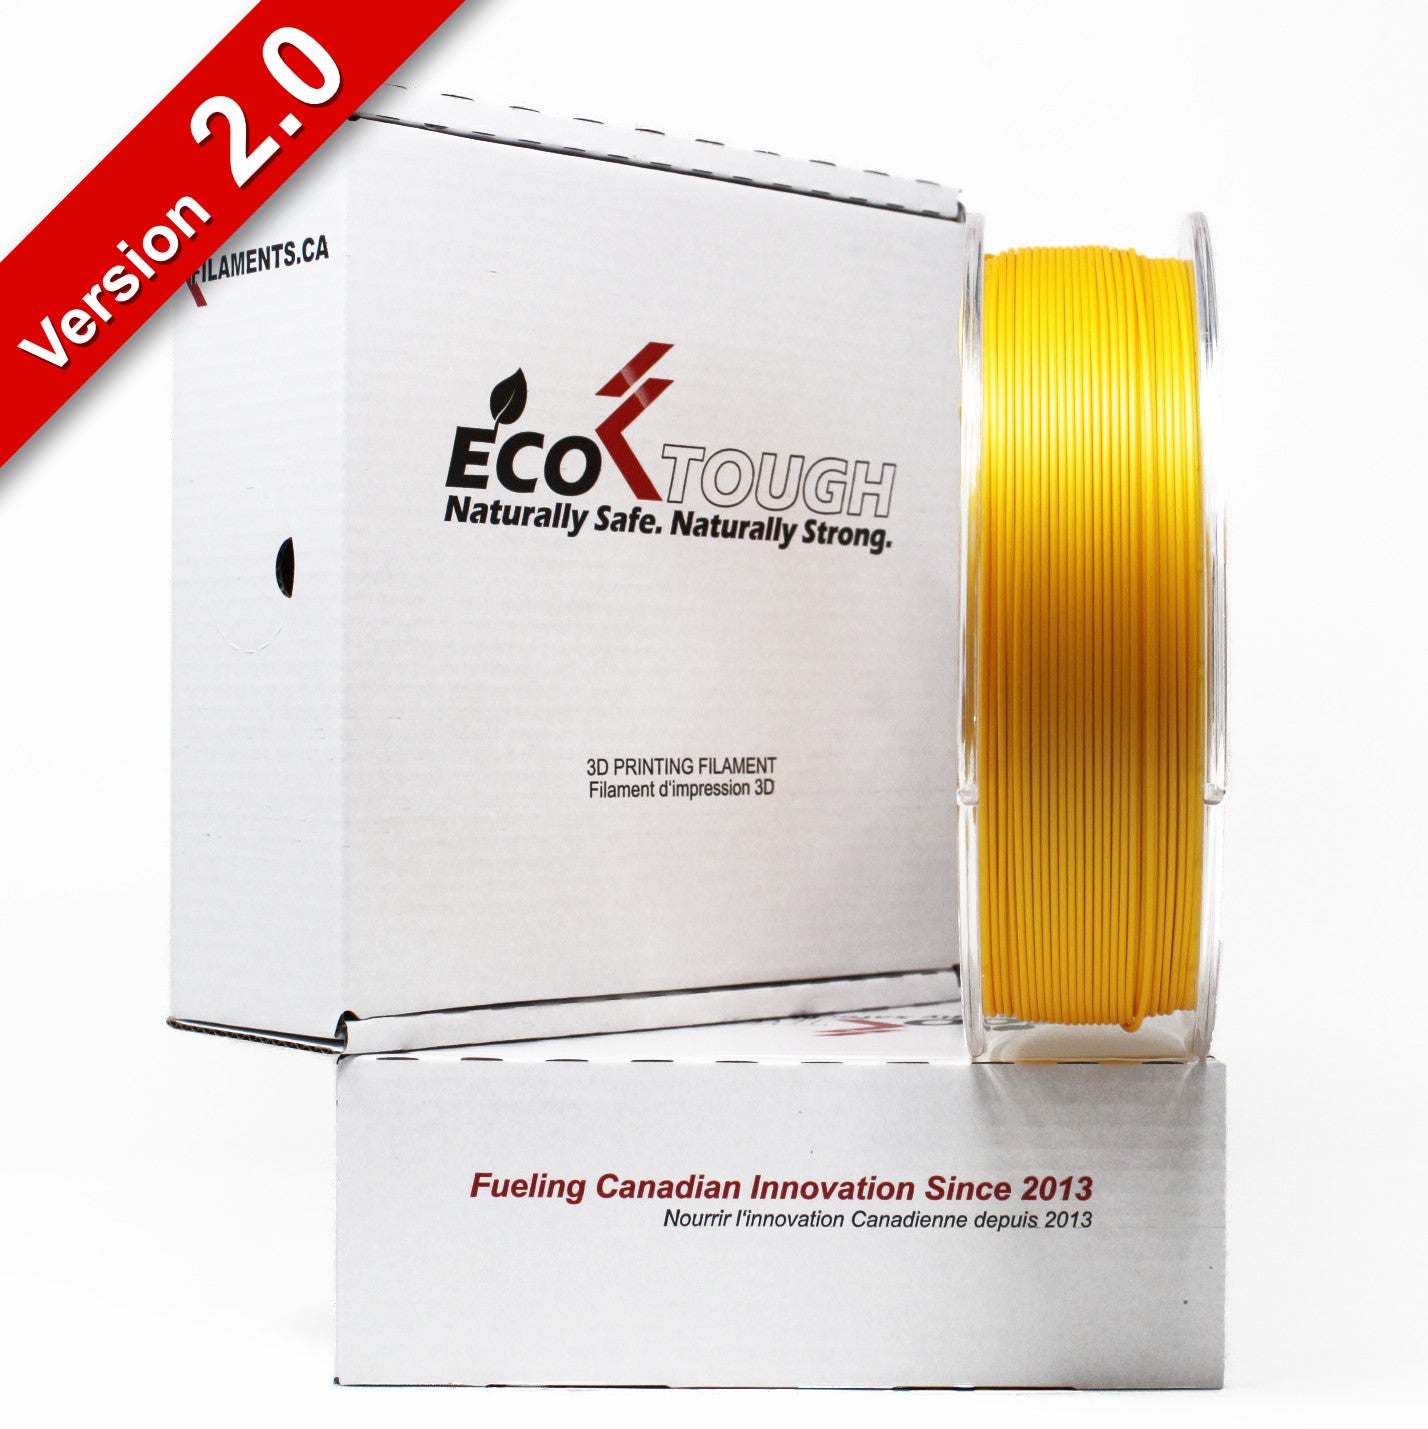 EconoFil™ Standard PLA Filament - SILK GOLD - 1.75mm - 1 KG